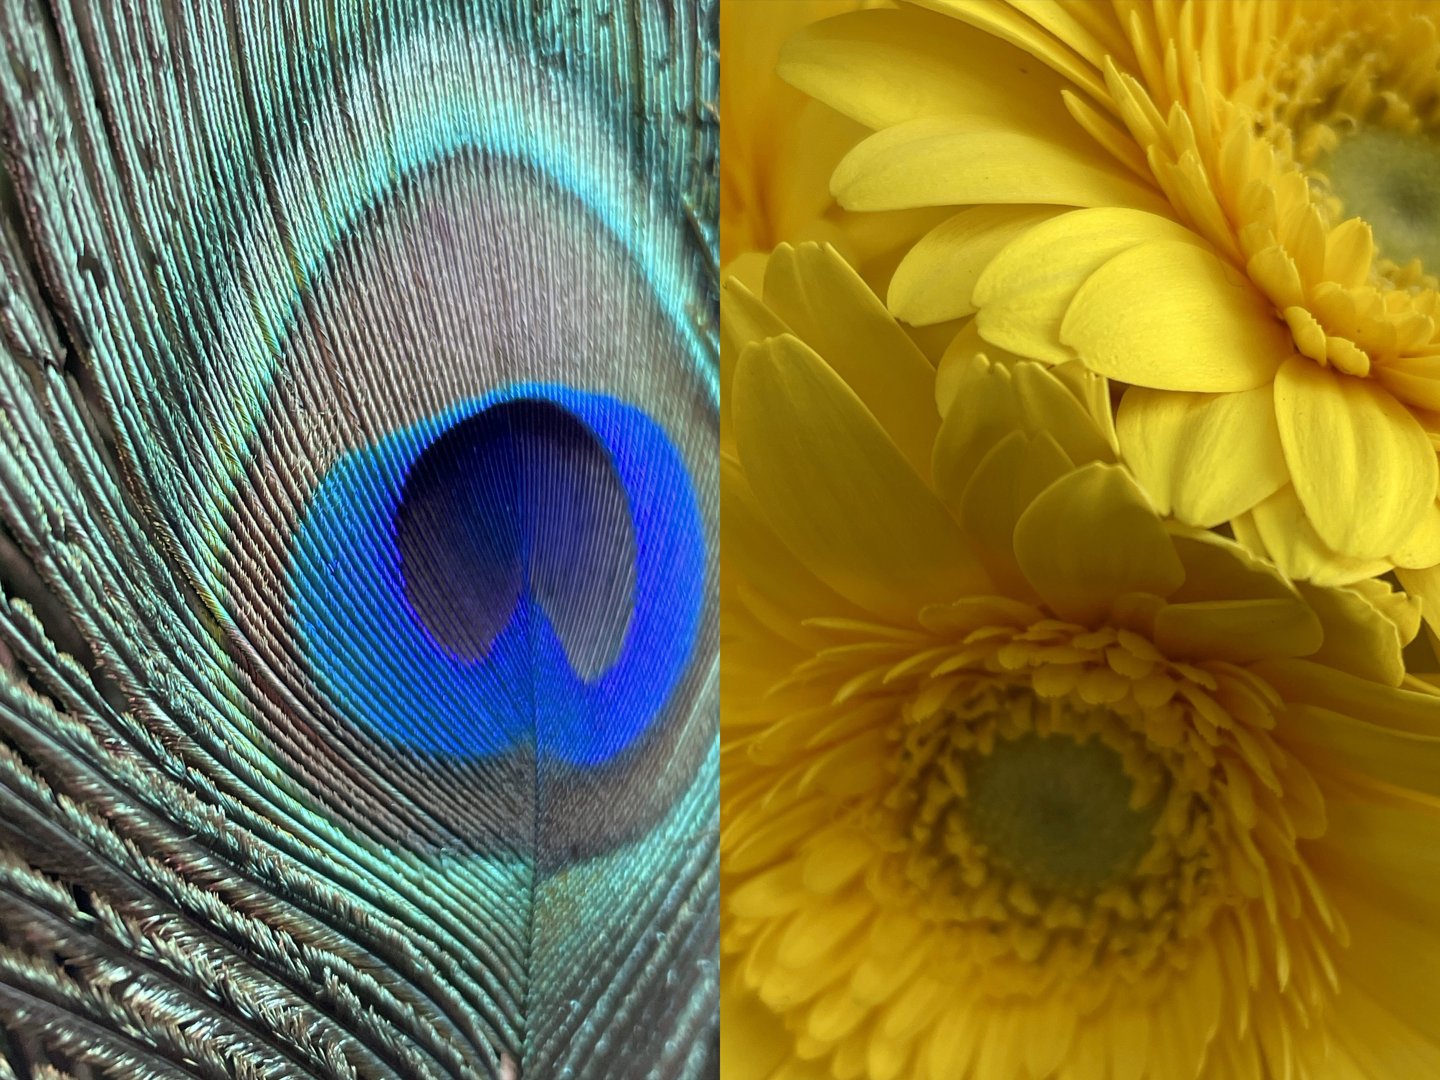 Fotos de una pluma y una flor de pavo real.